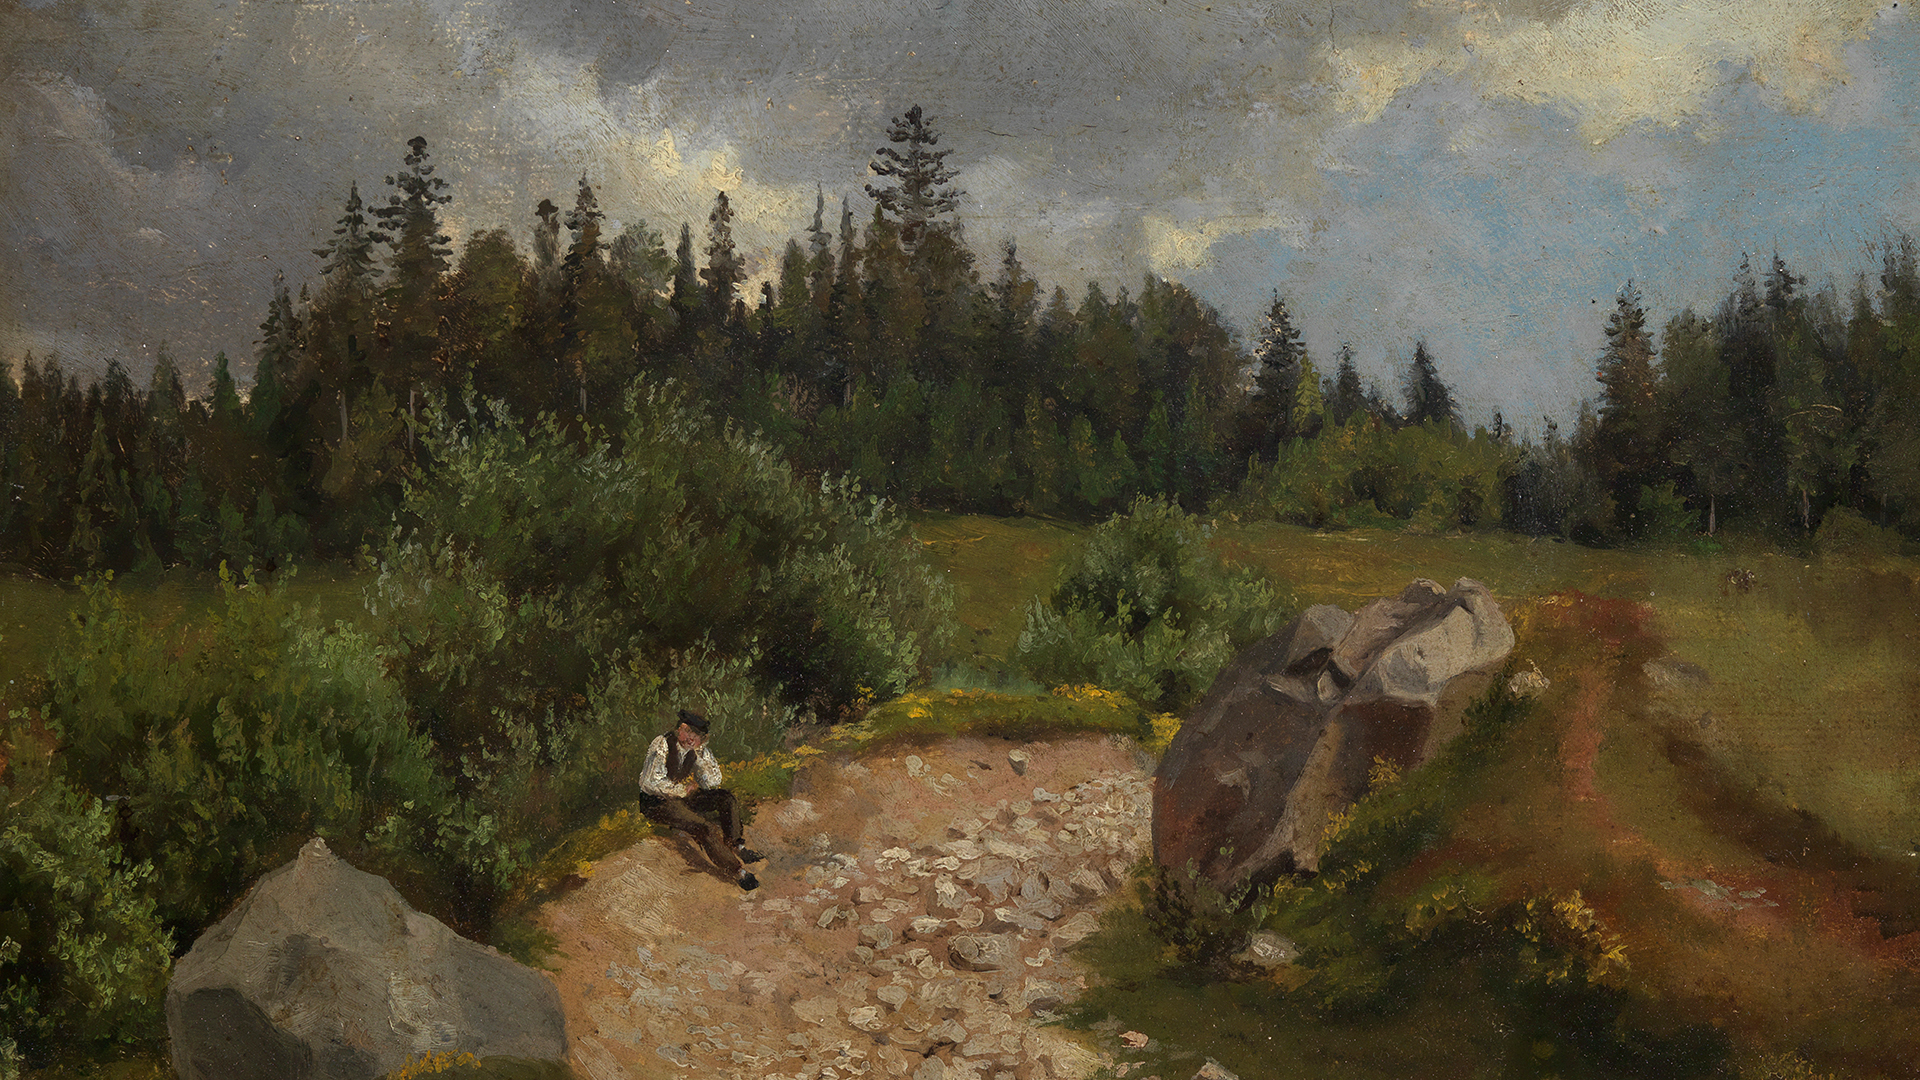 Ausschnitt aus einem Gemälde von Hans Thoma: An einem steinigen Weg zwischen zwei großen Felsblöcken sitzt ein Mann. Seitlich des Wegs Wiesen und Gebüsch, im Hintergrund der Saum eines dichten Nadelwalds.